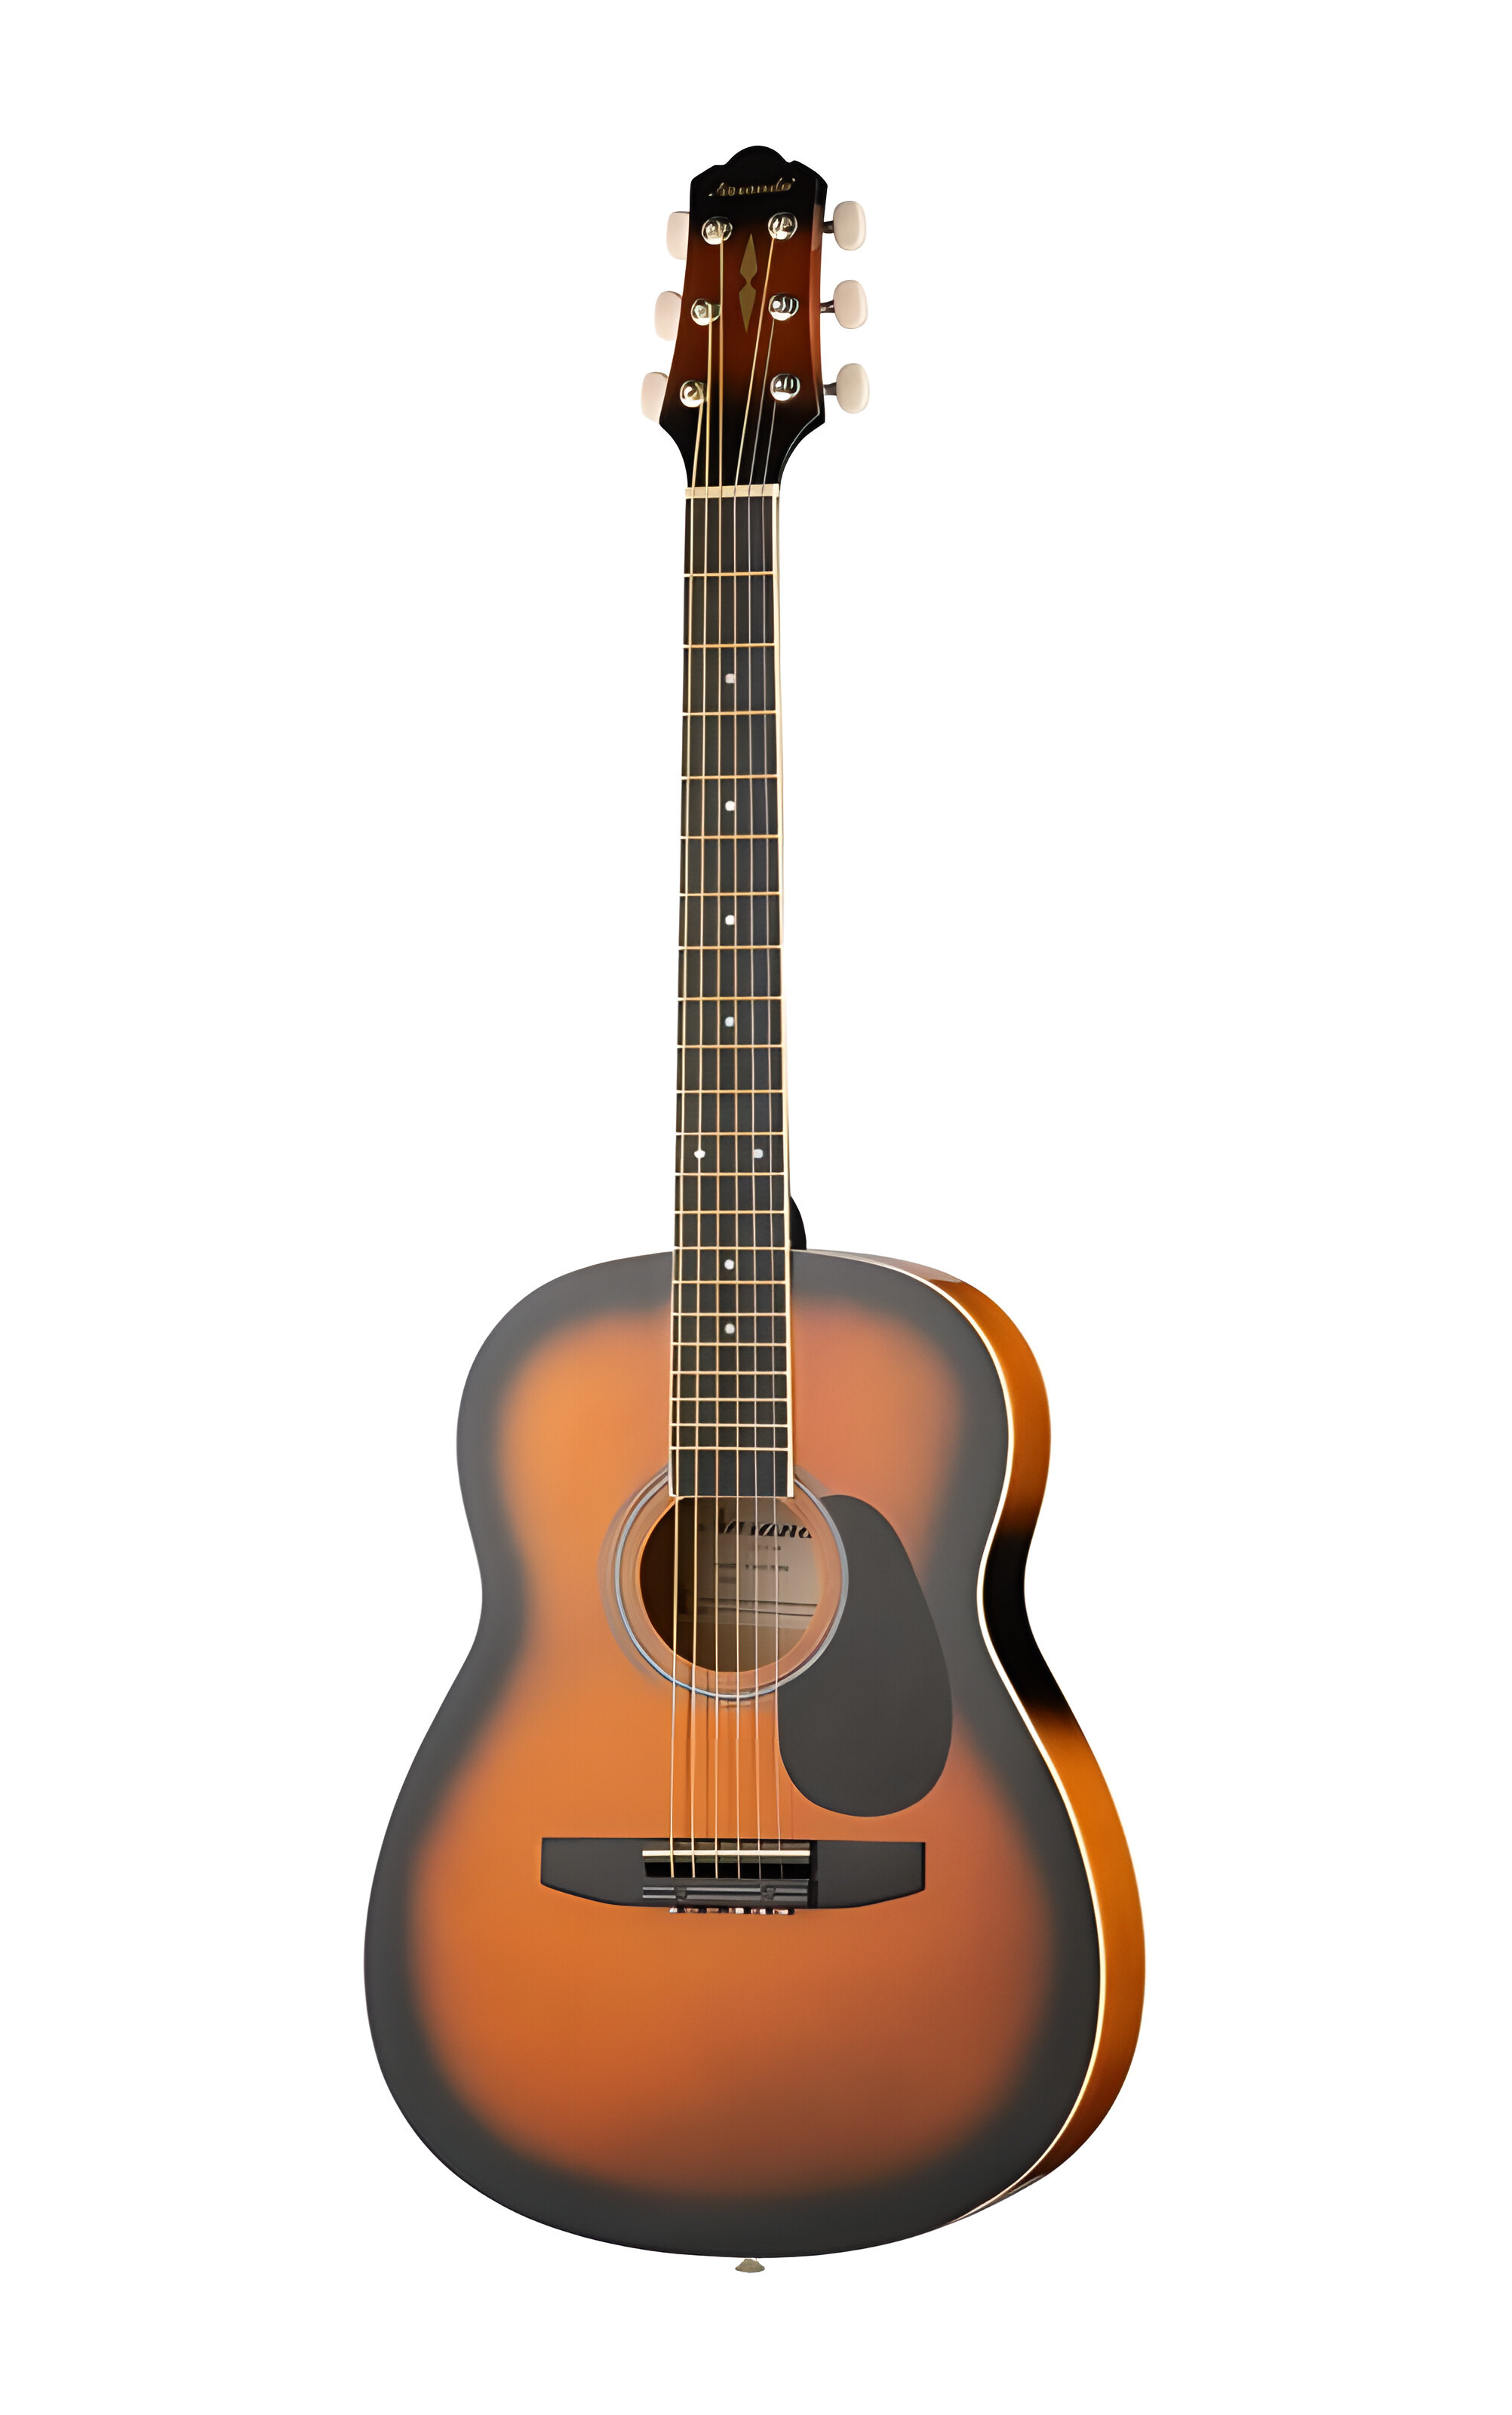 Акустические гитары Naranda CAG110BS гитара акустическая дерево 97см с вырезом